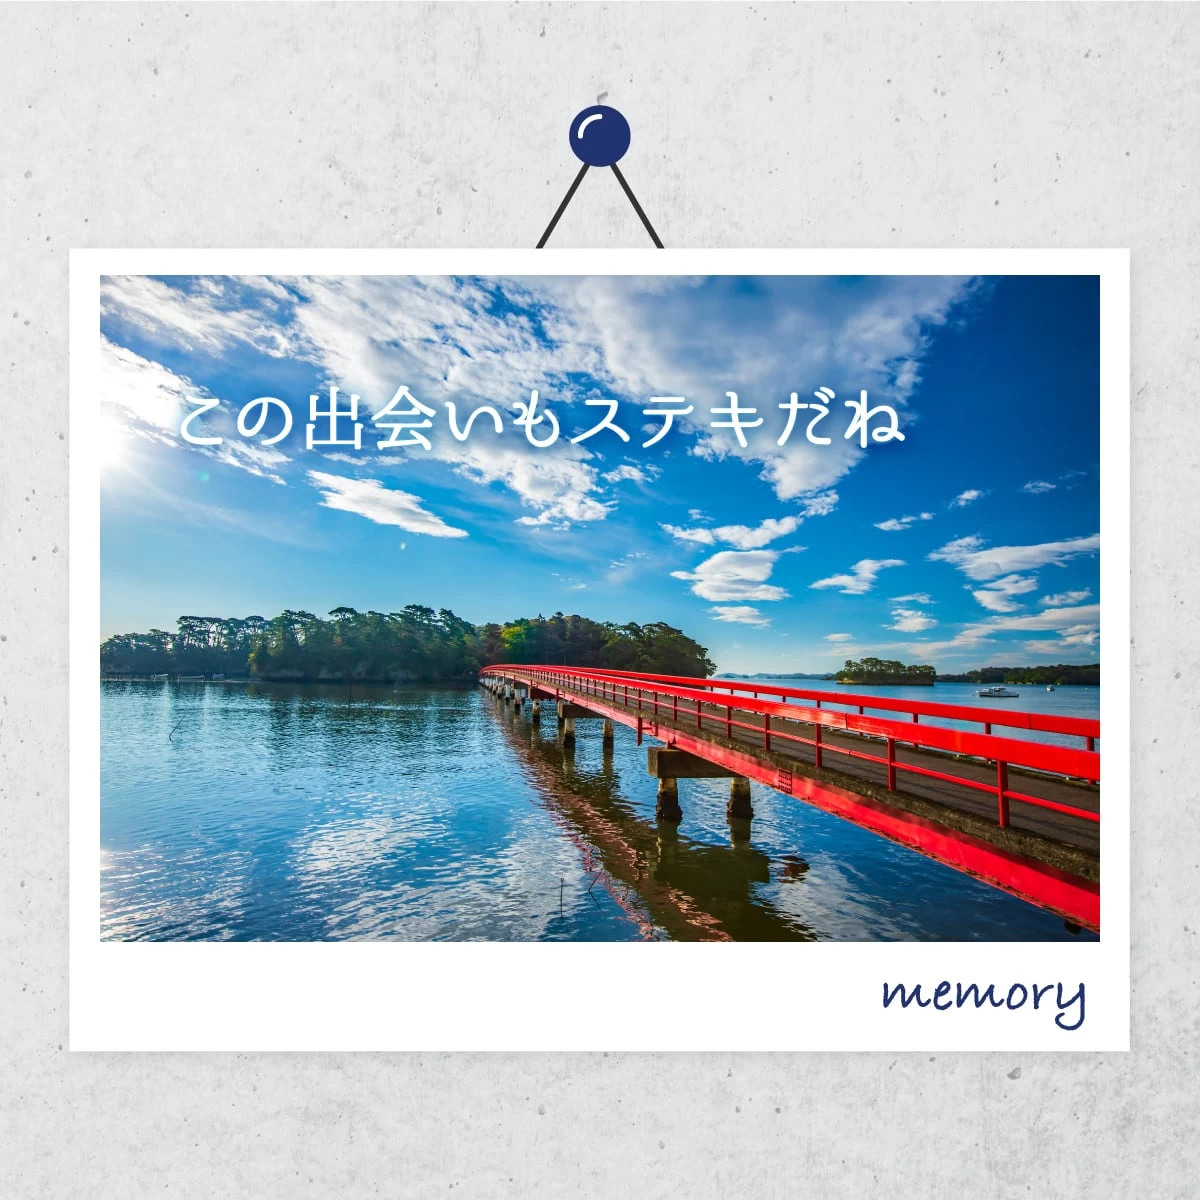 松島の絶景を巡る旅  カップルで温泉も満喫  